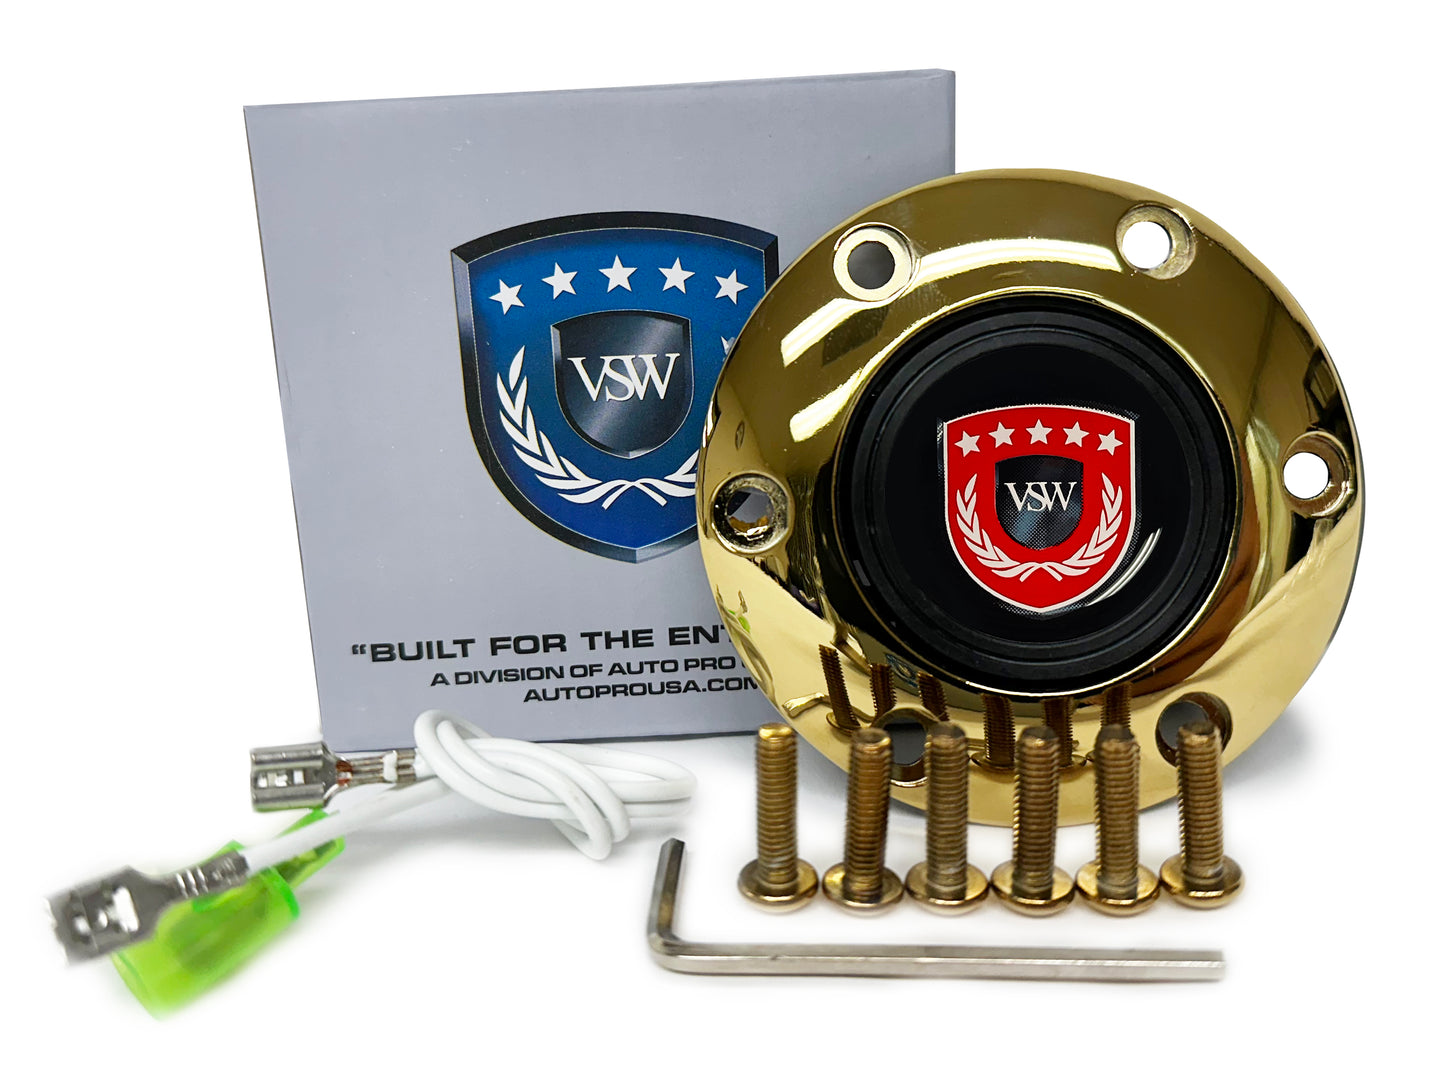 VSW S6 | Red VSW Emblem | Gold Horn Button | STEVSWRED-GLD